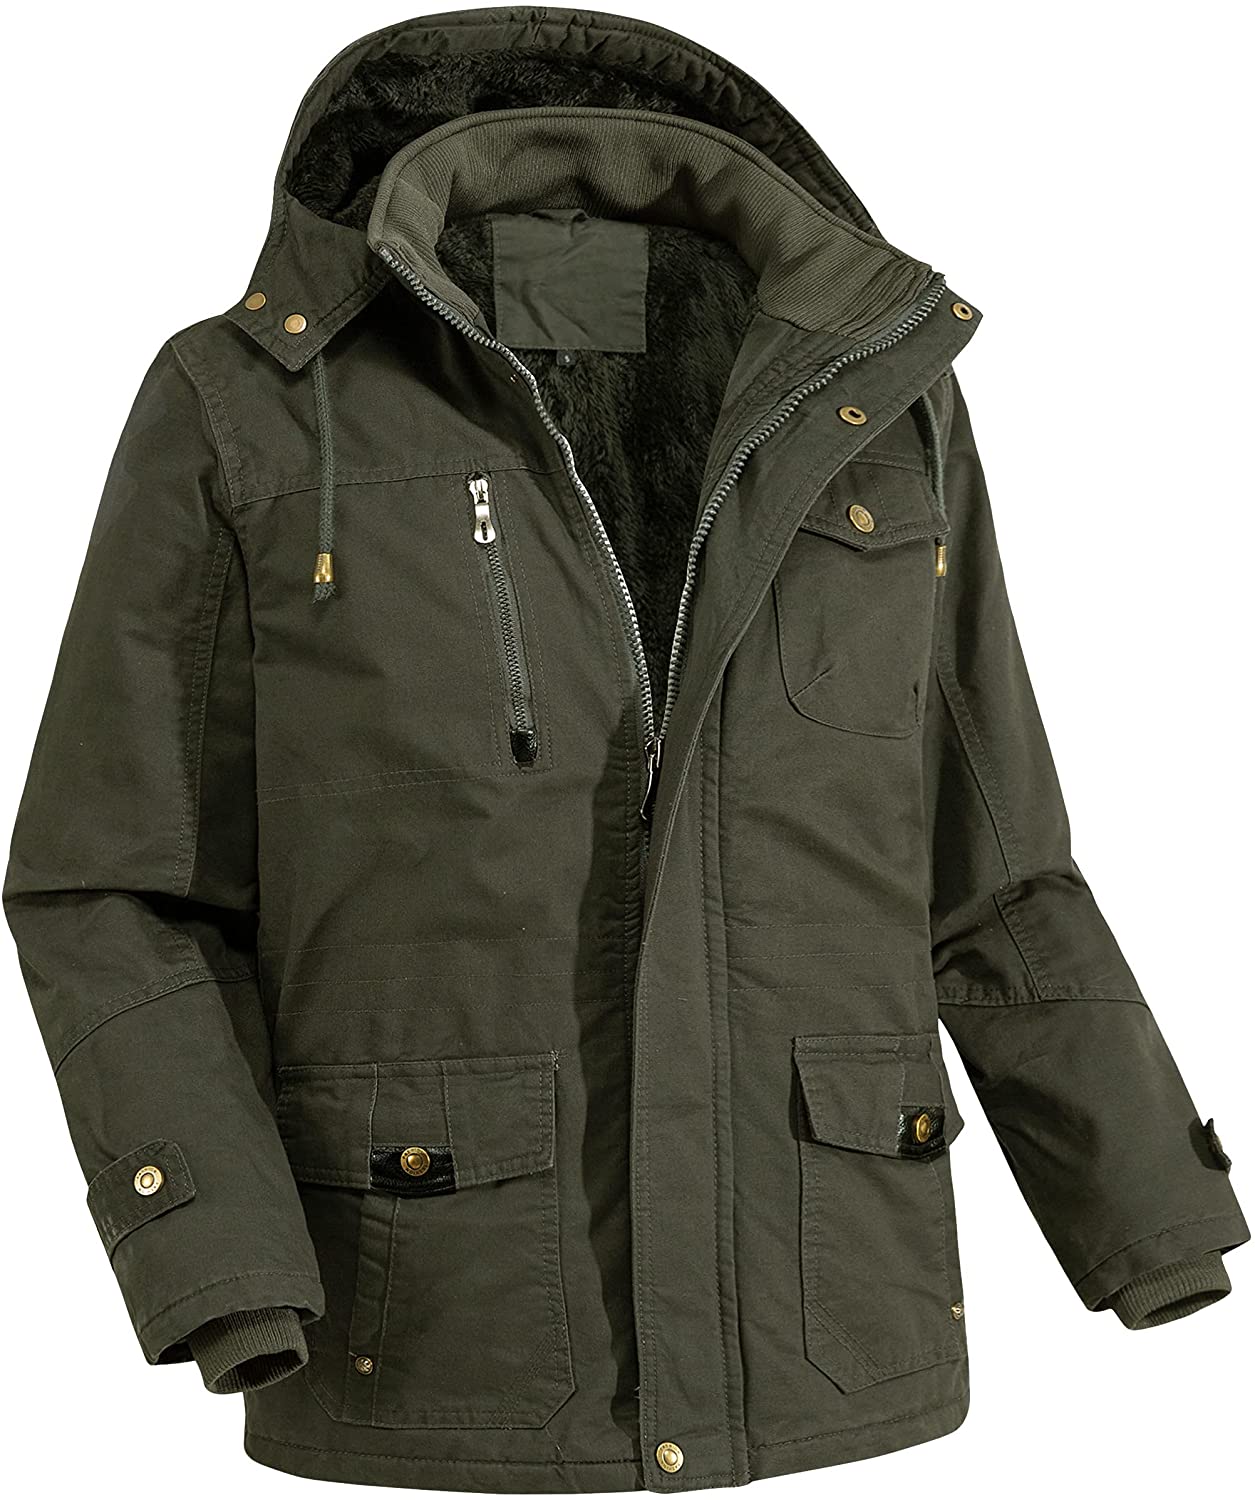 LEPOAR Men's Jacket-Winter Parka Military Jacket Fleece Lined Warm Safari Cargo Coat Removable Hood Cotton Outwear 